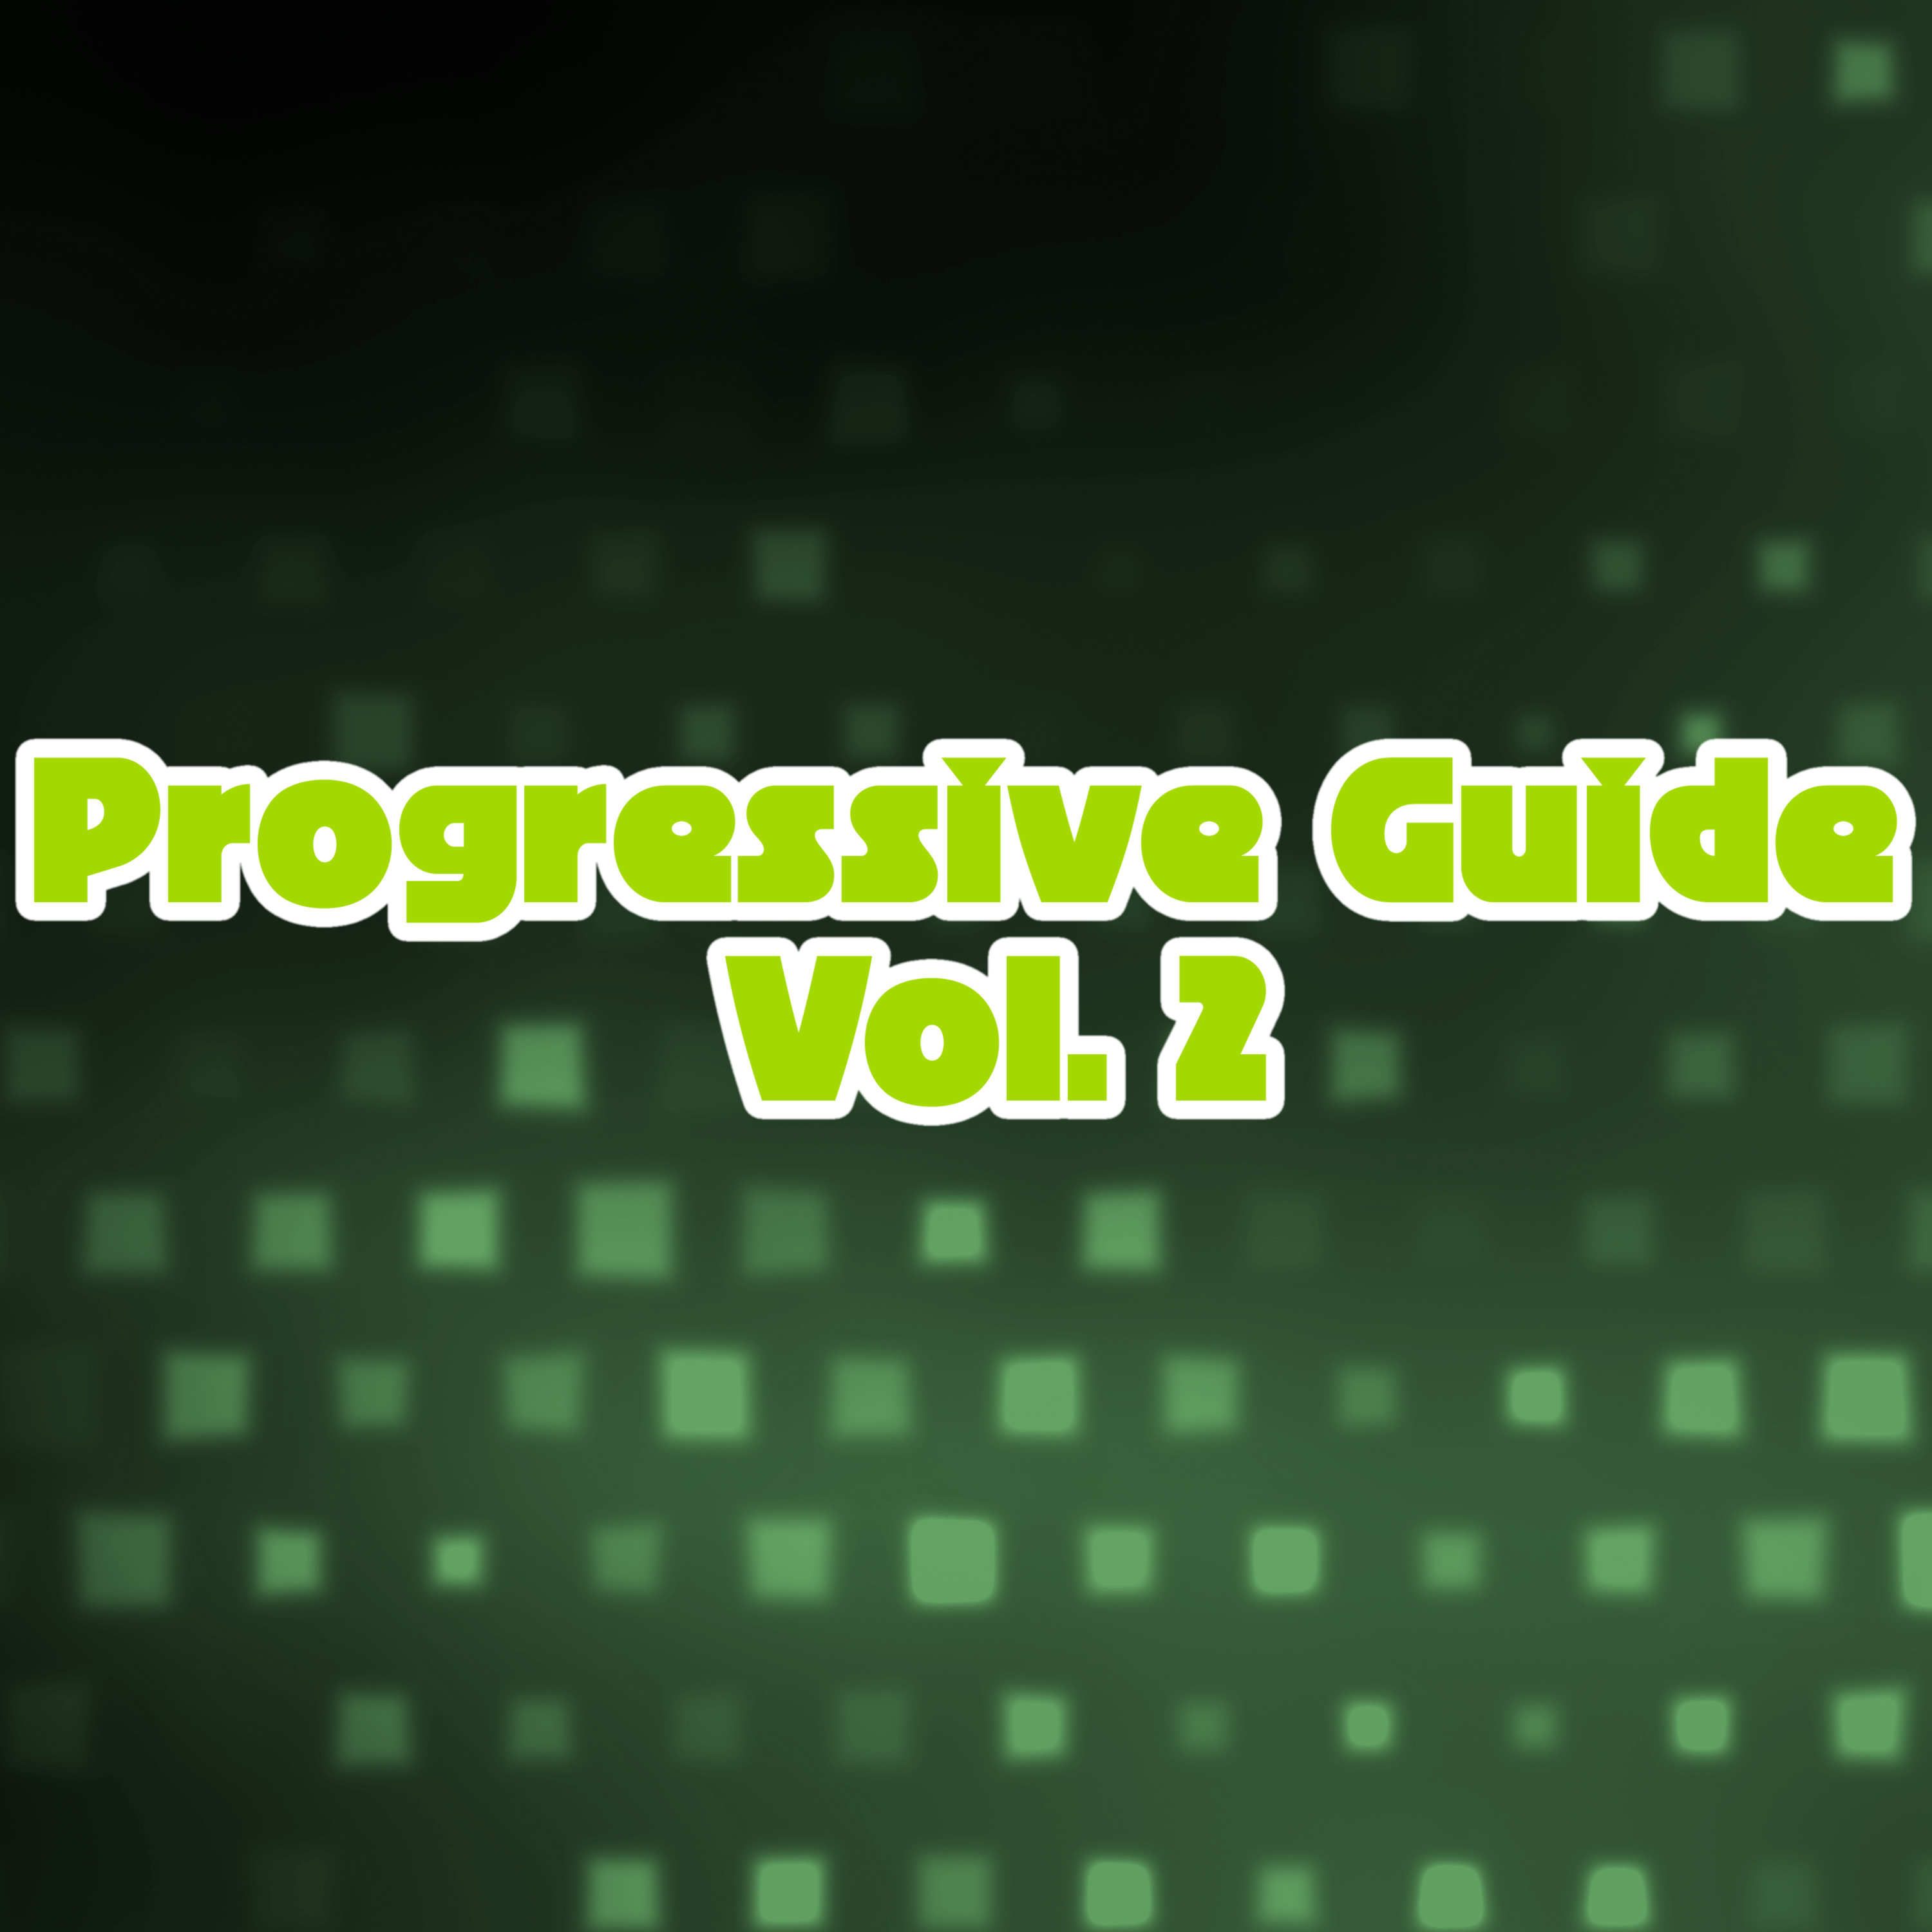 Progressive Guide, Vol. 2